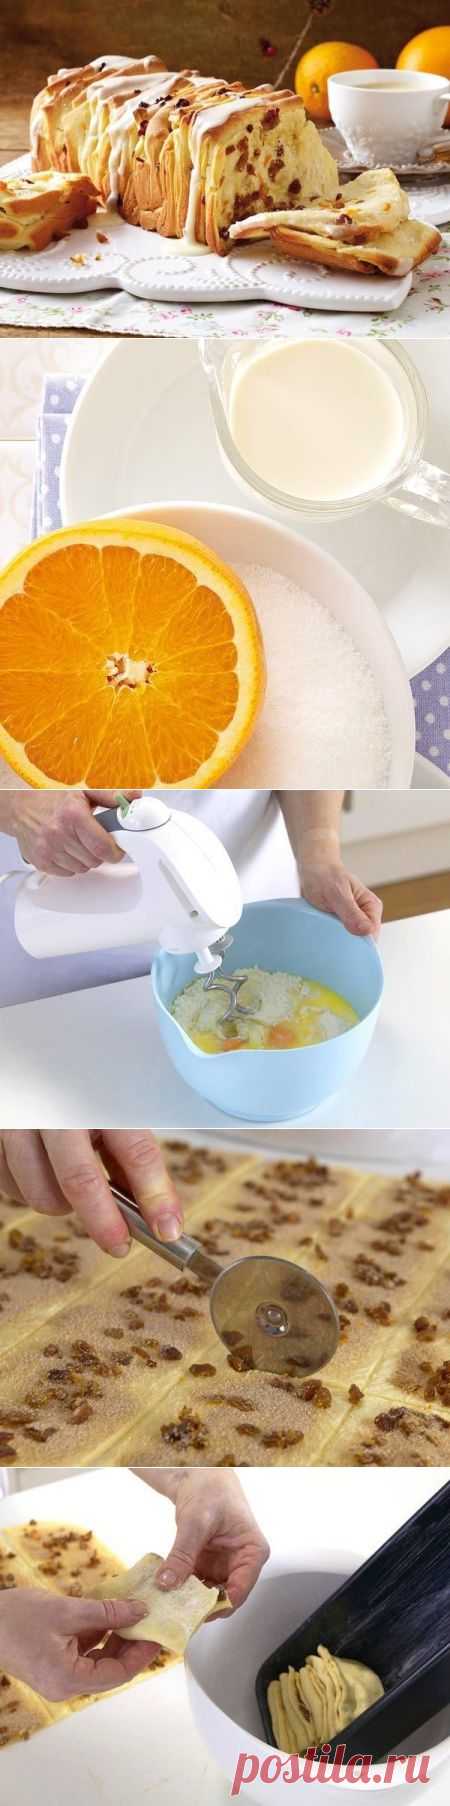 Как приготовить апельсиновый хлеб (orangenbrot backen) - рецепт, ингридиенты и фотографии